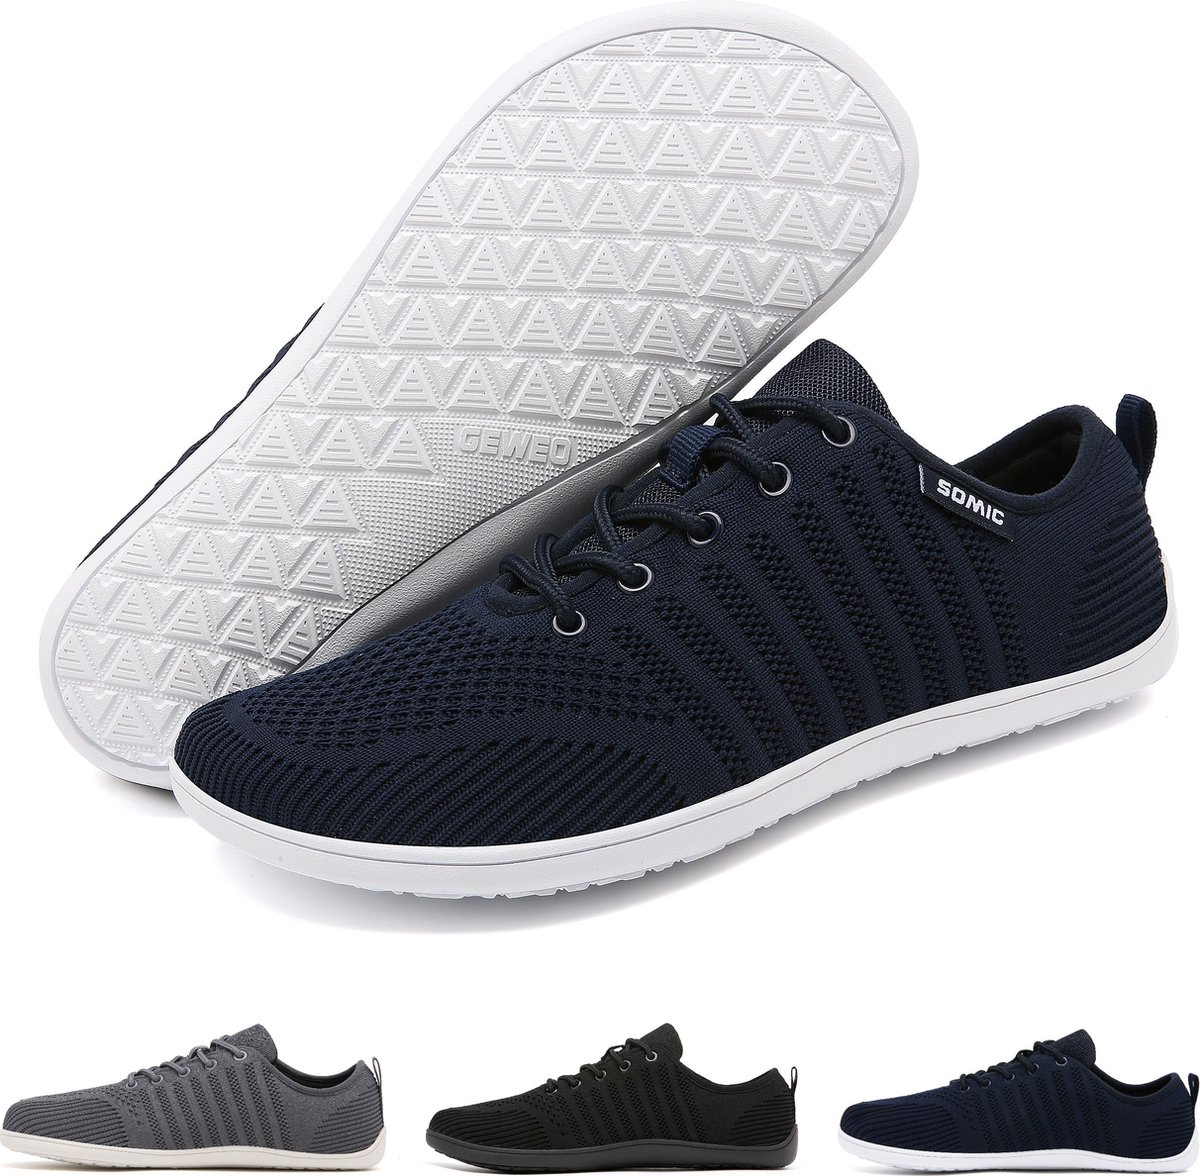 Somic Barefoot Schoenen - Sportschoenen Sneakers - Fitnessschoenen - Hardloopschoenen - Ademend Knit Textiel - Platte Zool - Blauw - Maat 40